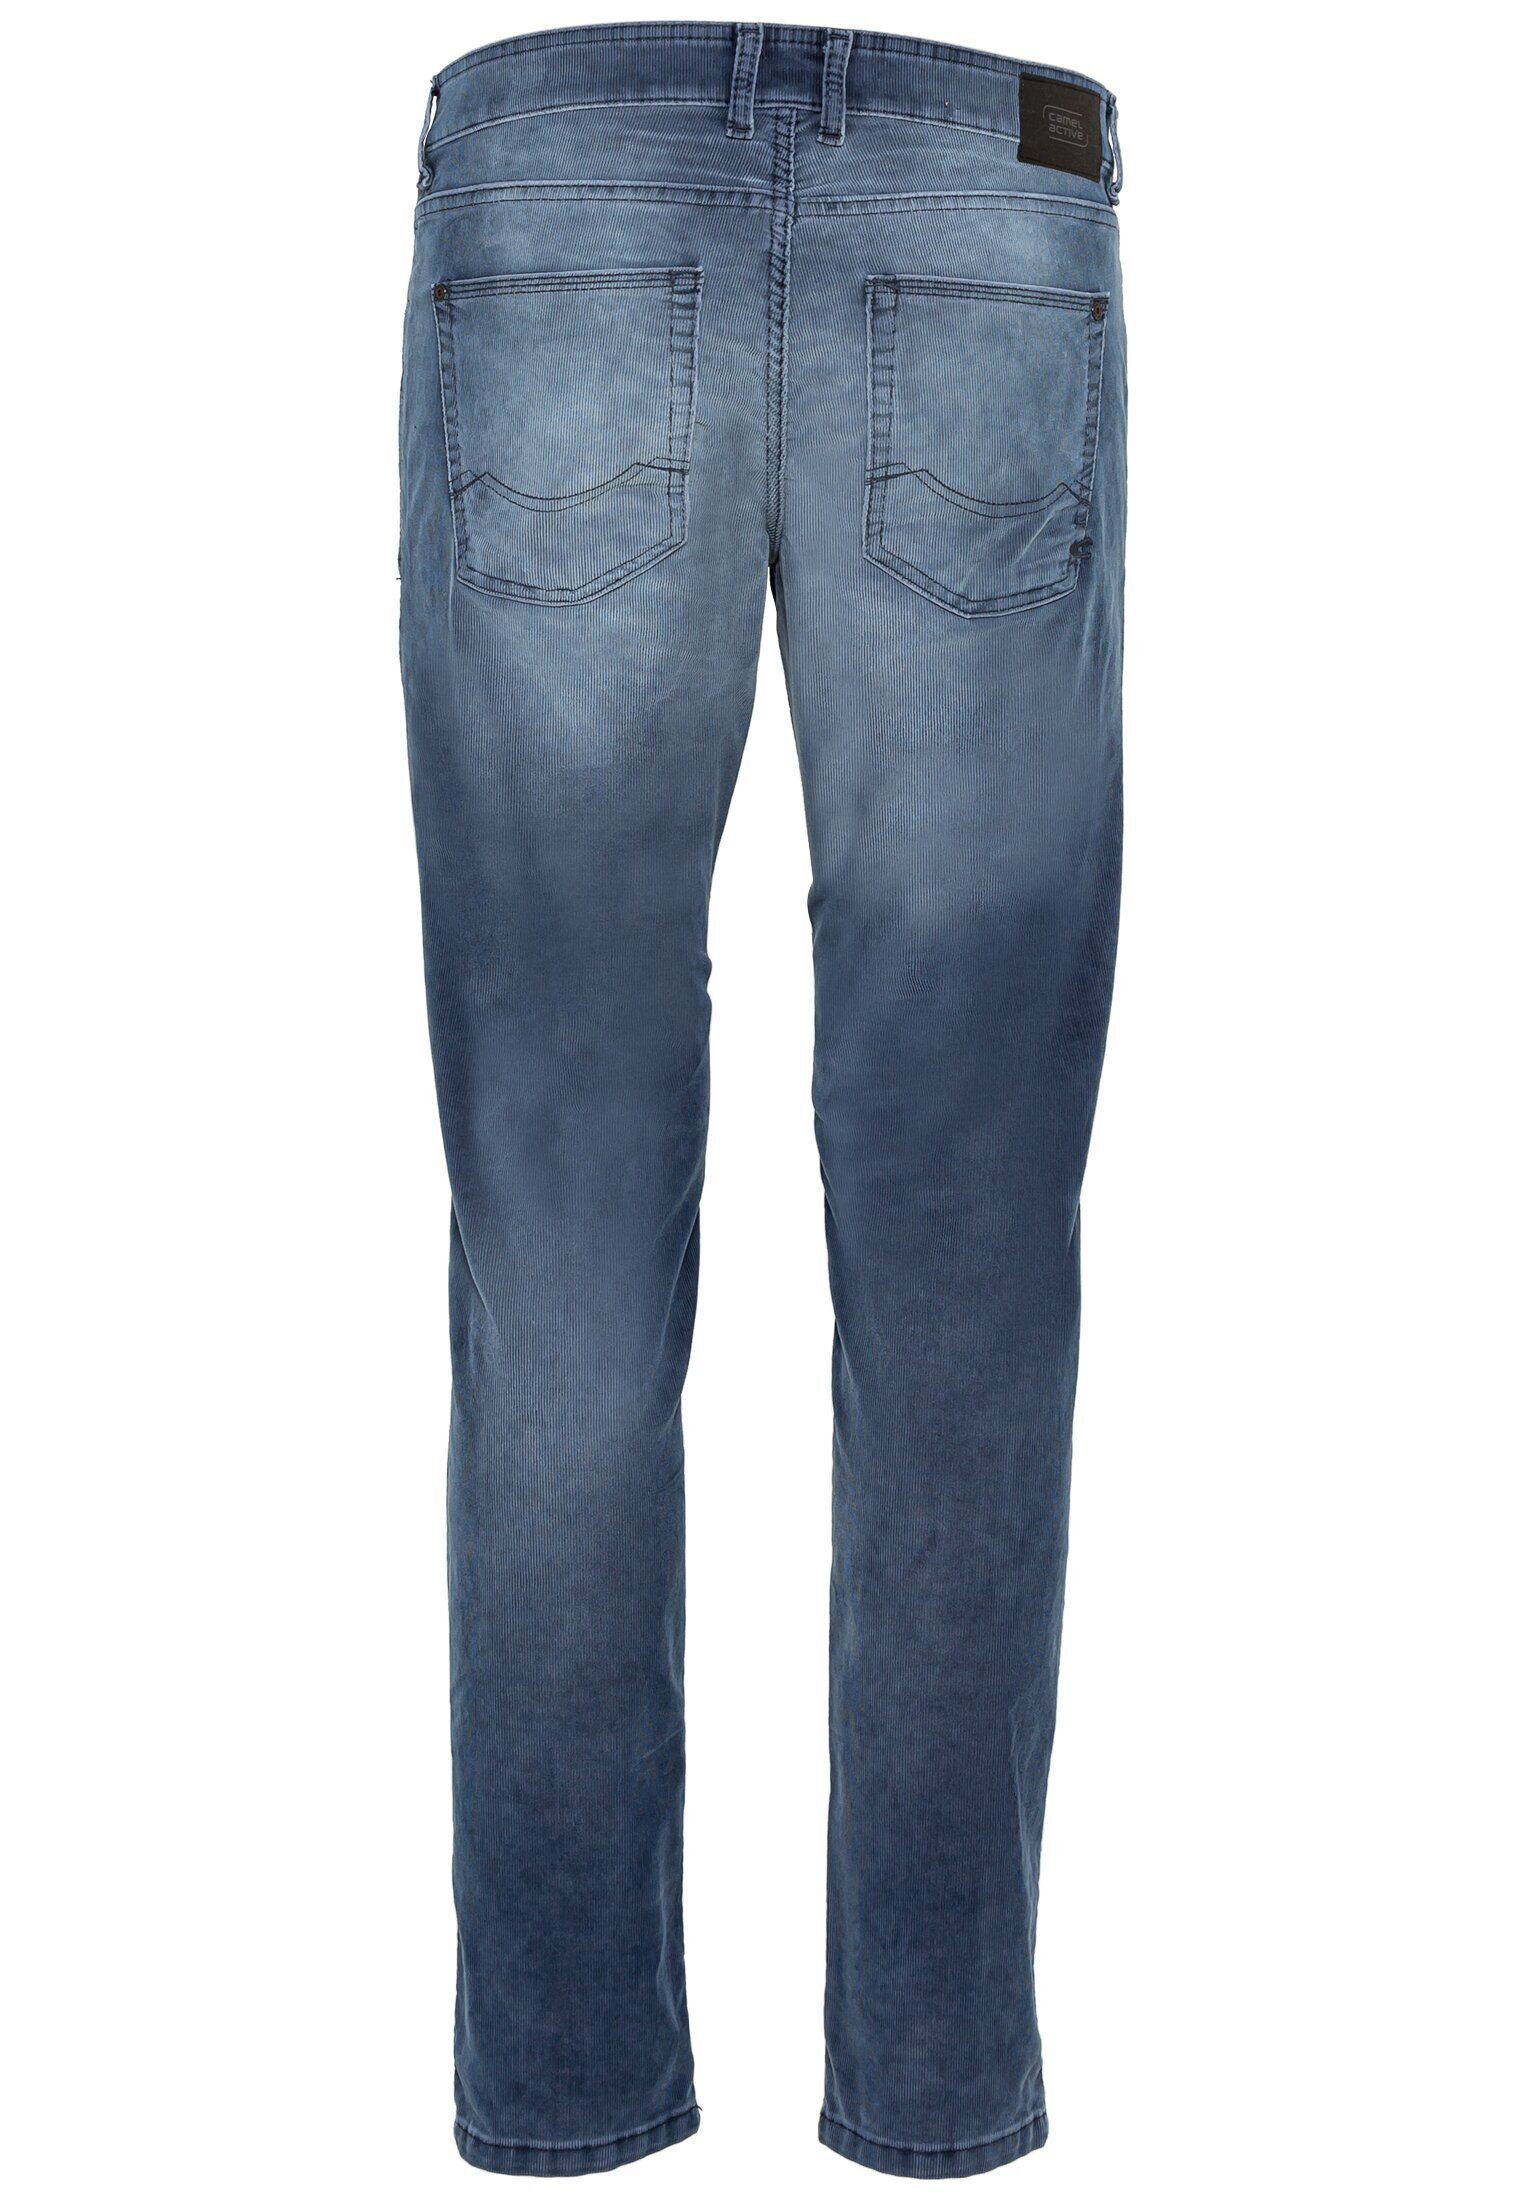 camel active 5-Pocket-Jeans Cordhose Fit Blau Slim